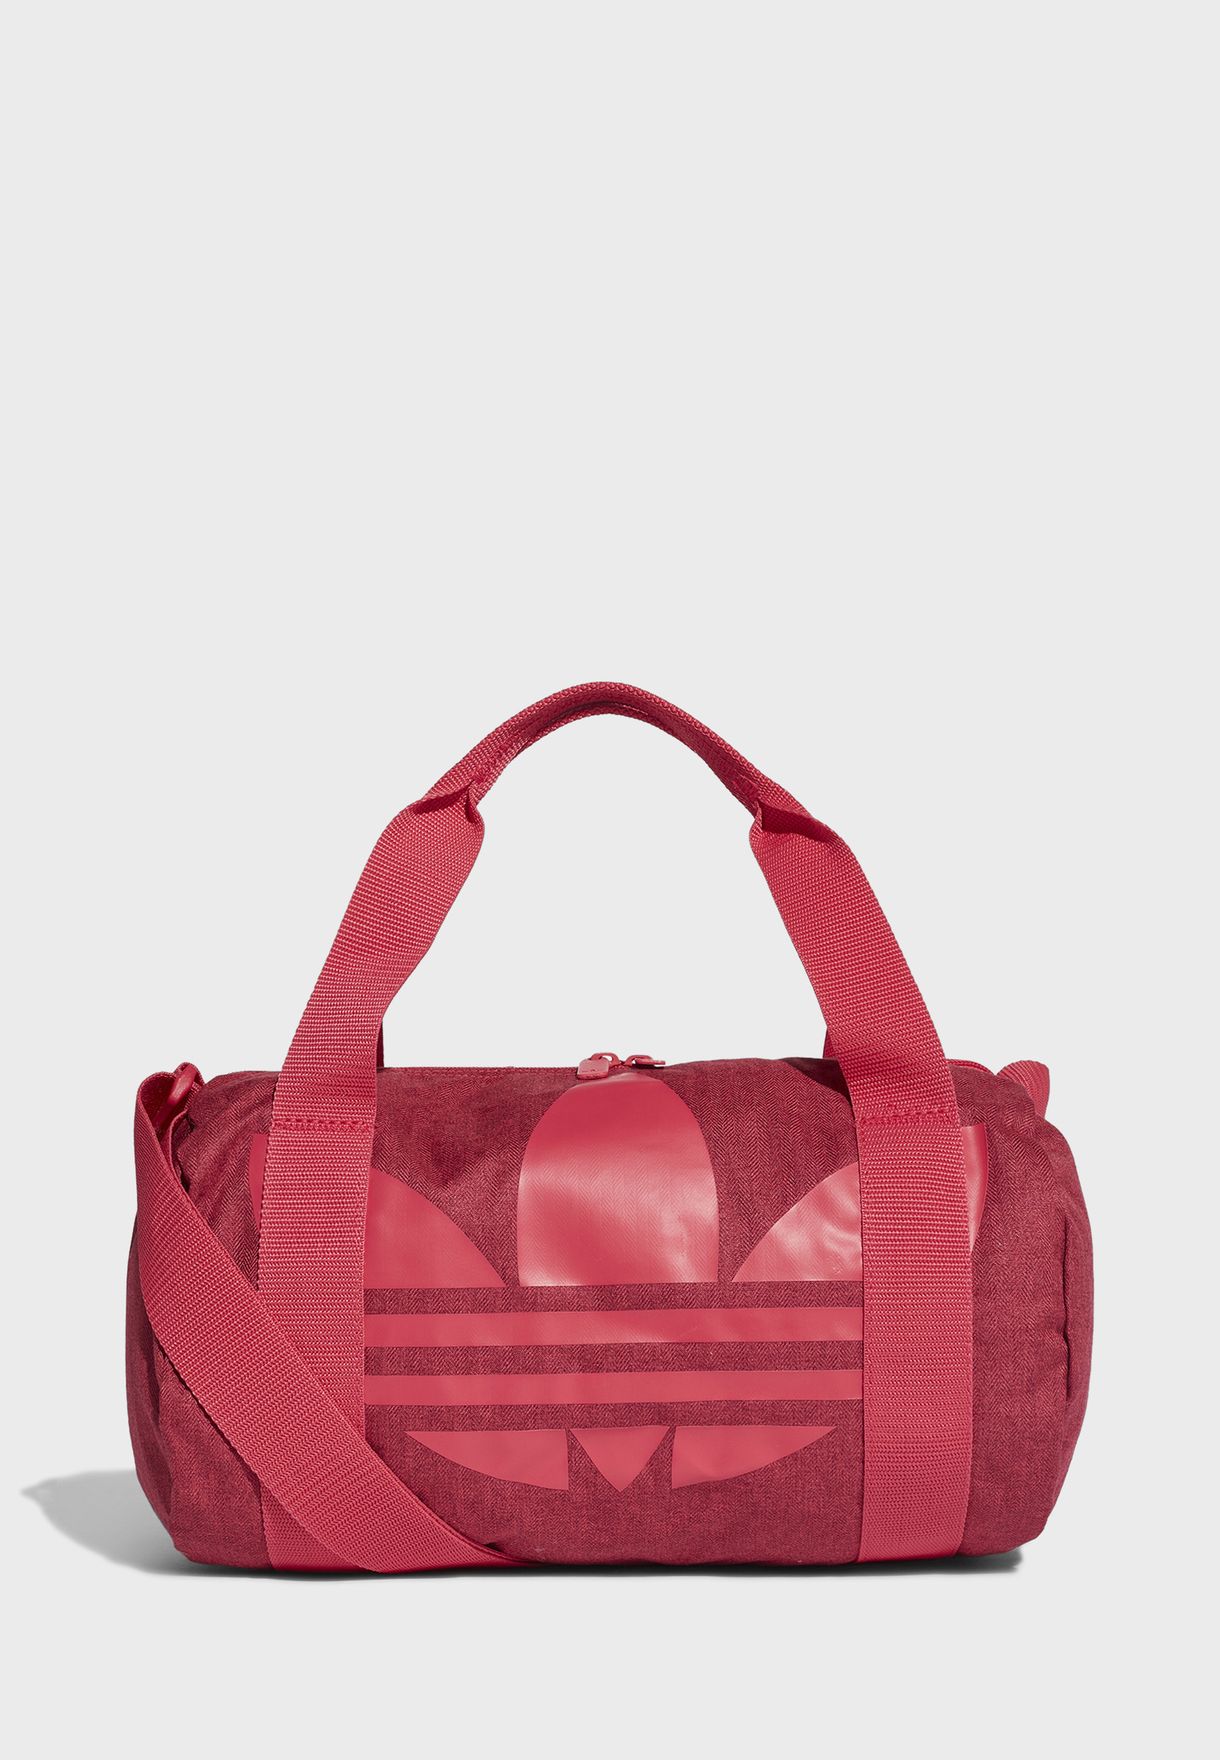 red adidas shoulder bag